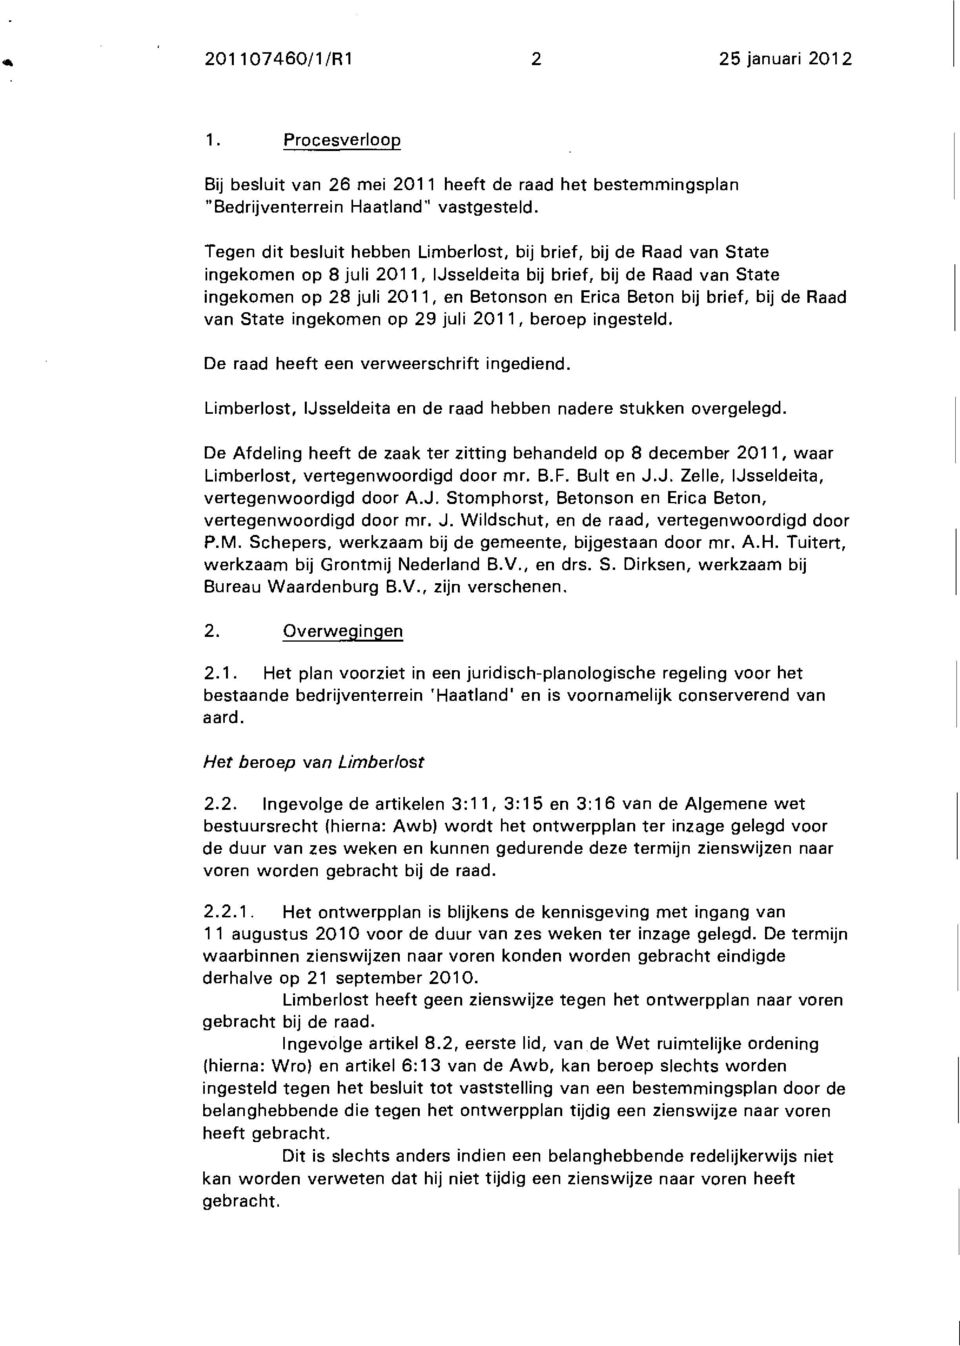 brief, bij de Raad van State ingekomen op 29 juli 2011, beroep ingesteld. De raad heeft een verweerschrift ingediend. Limberlost, IJsseldeita en de raad hebben nadere stukken overgelegd.